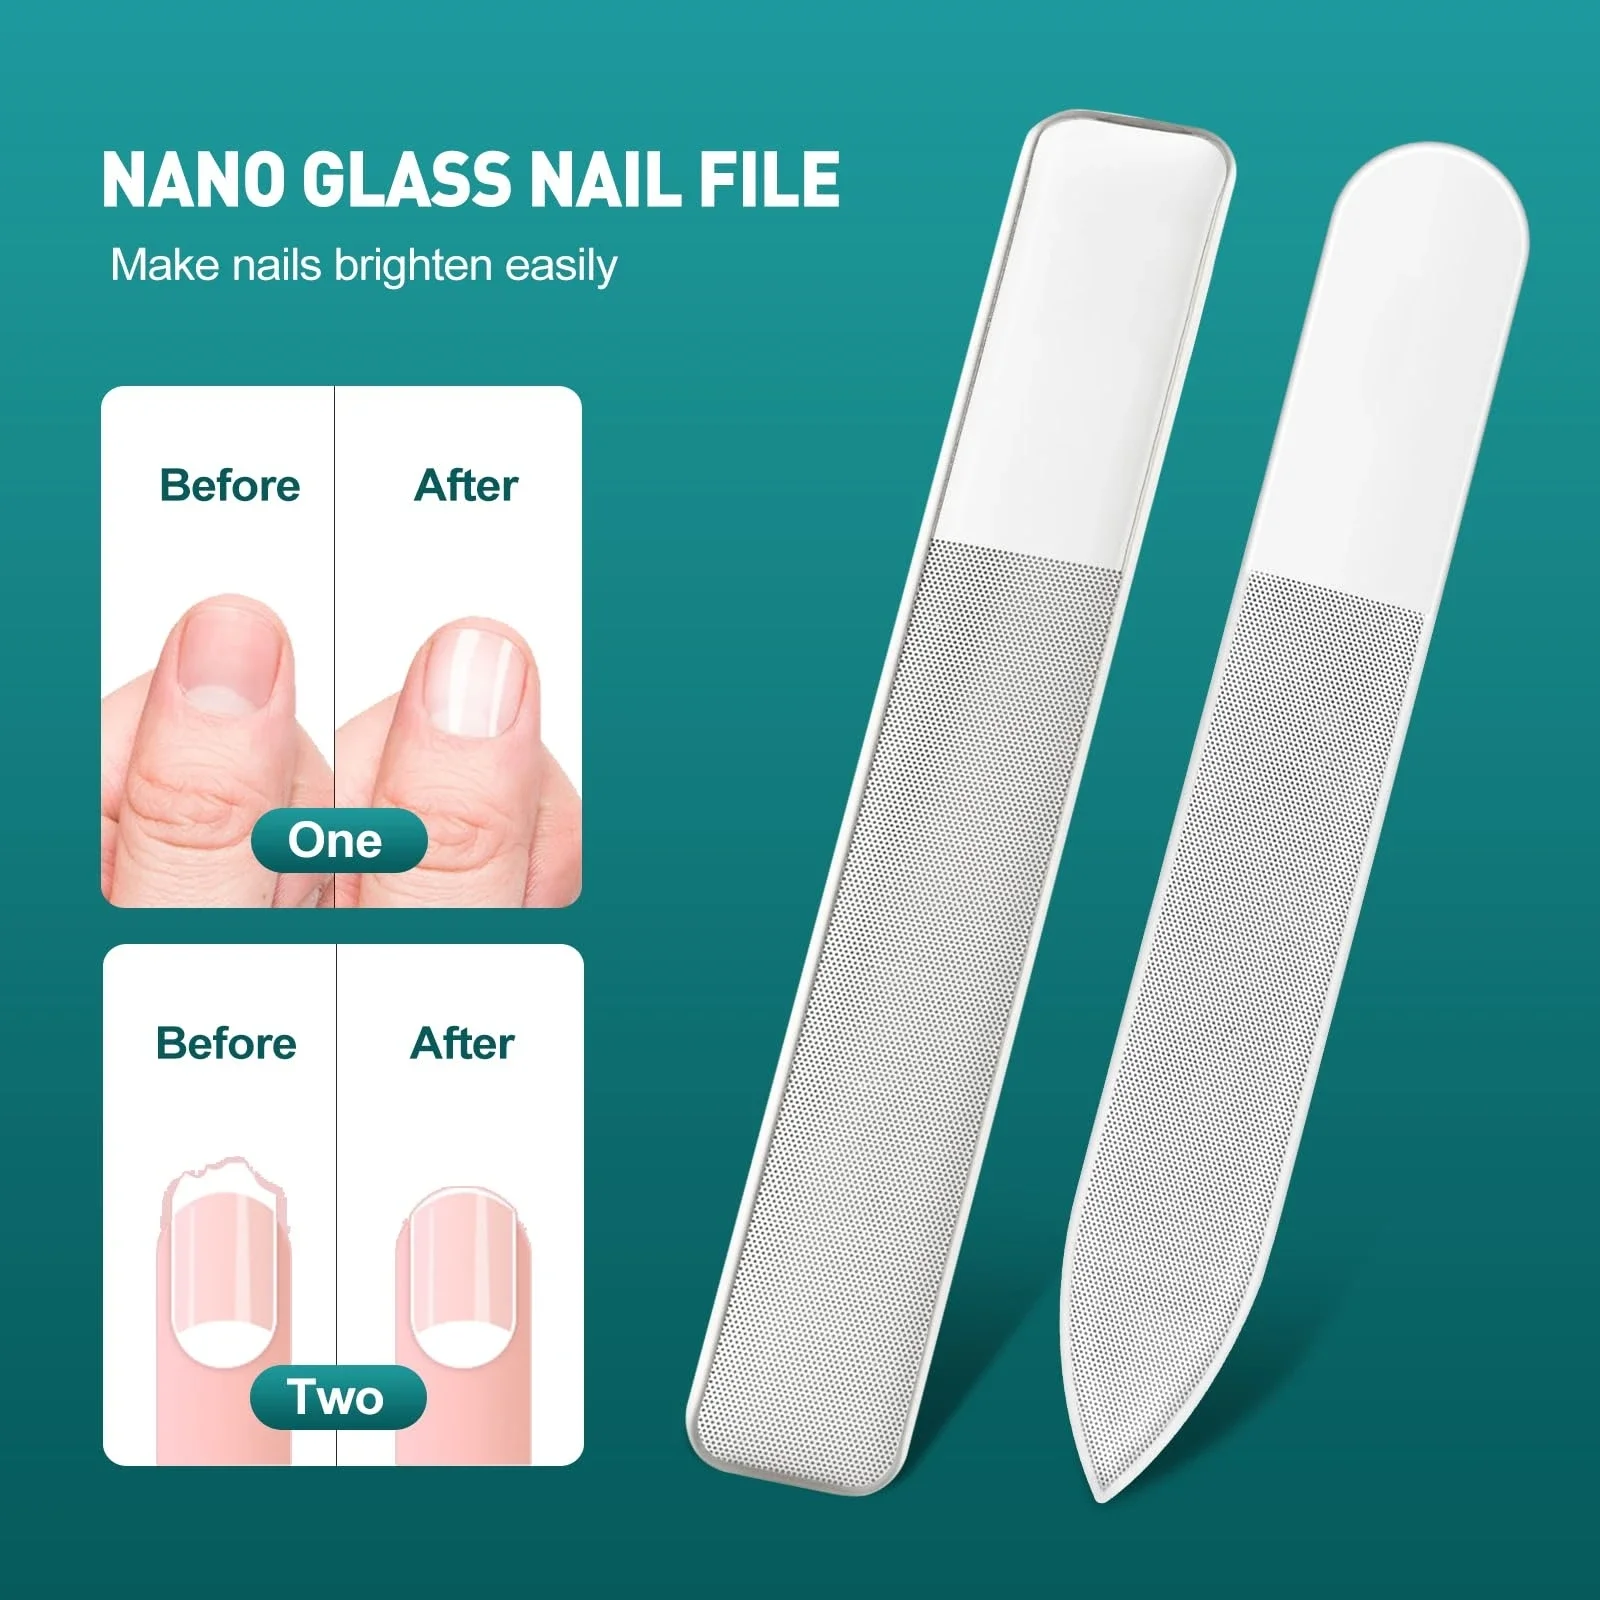 Стеклянный лак для ногтей, обновление, пилочки и буферы из нано стекла, полировщик, Профессиональный набор хрустальных маникюрных инструментов для натуральных ногтей 0